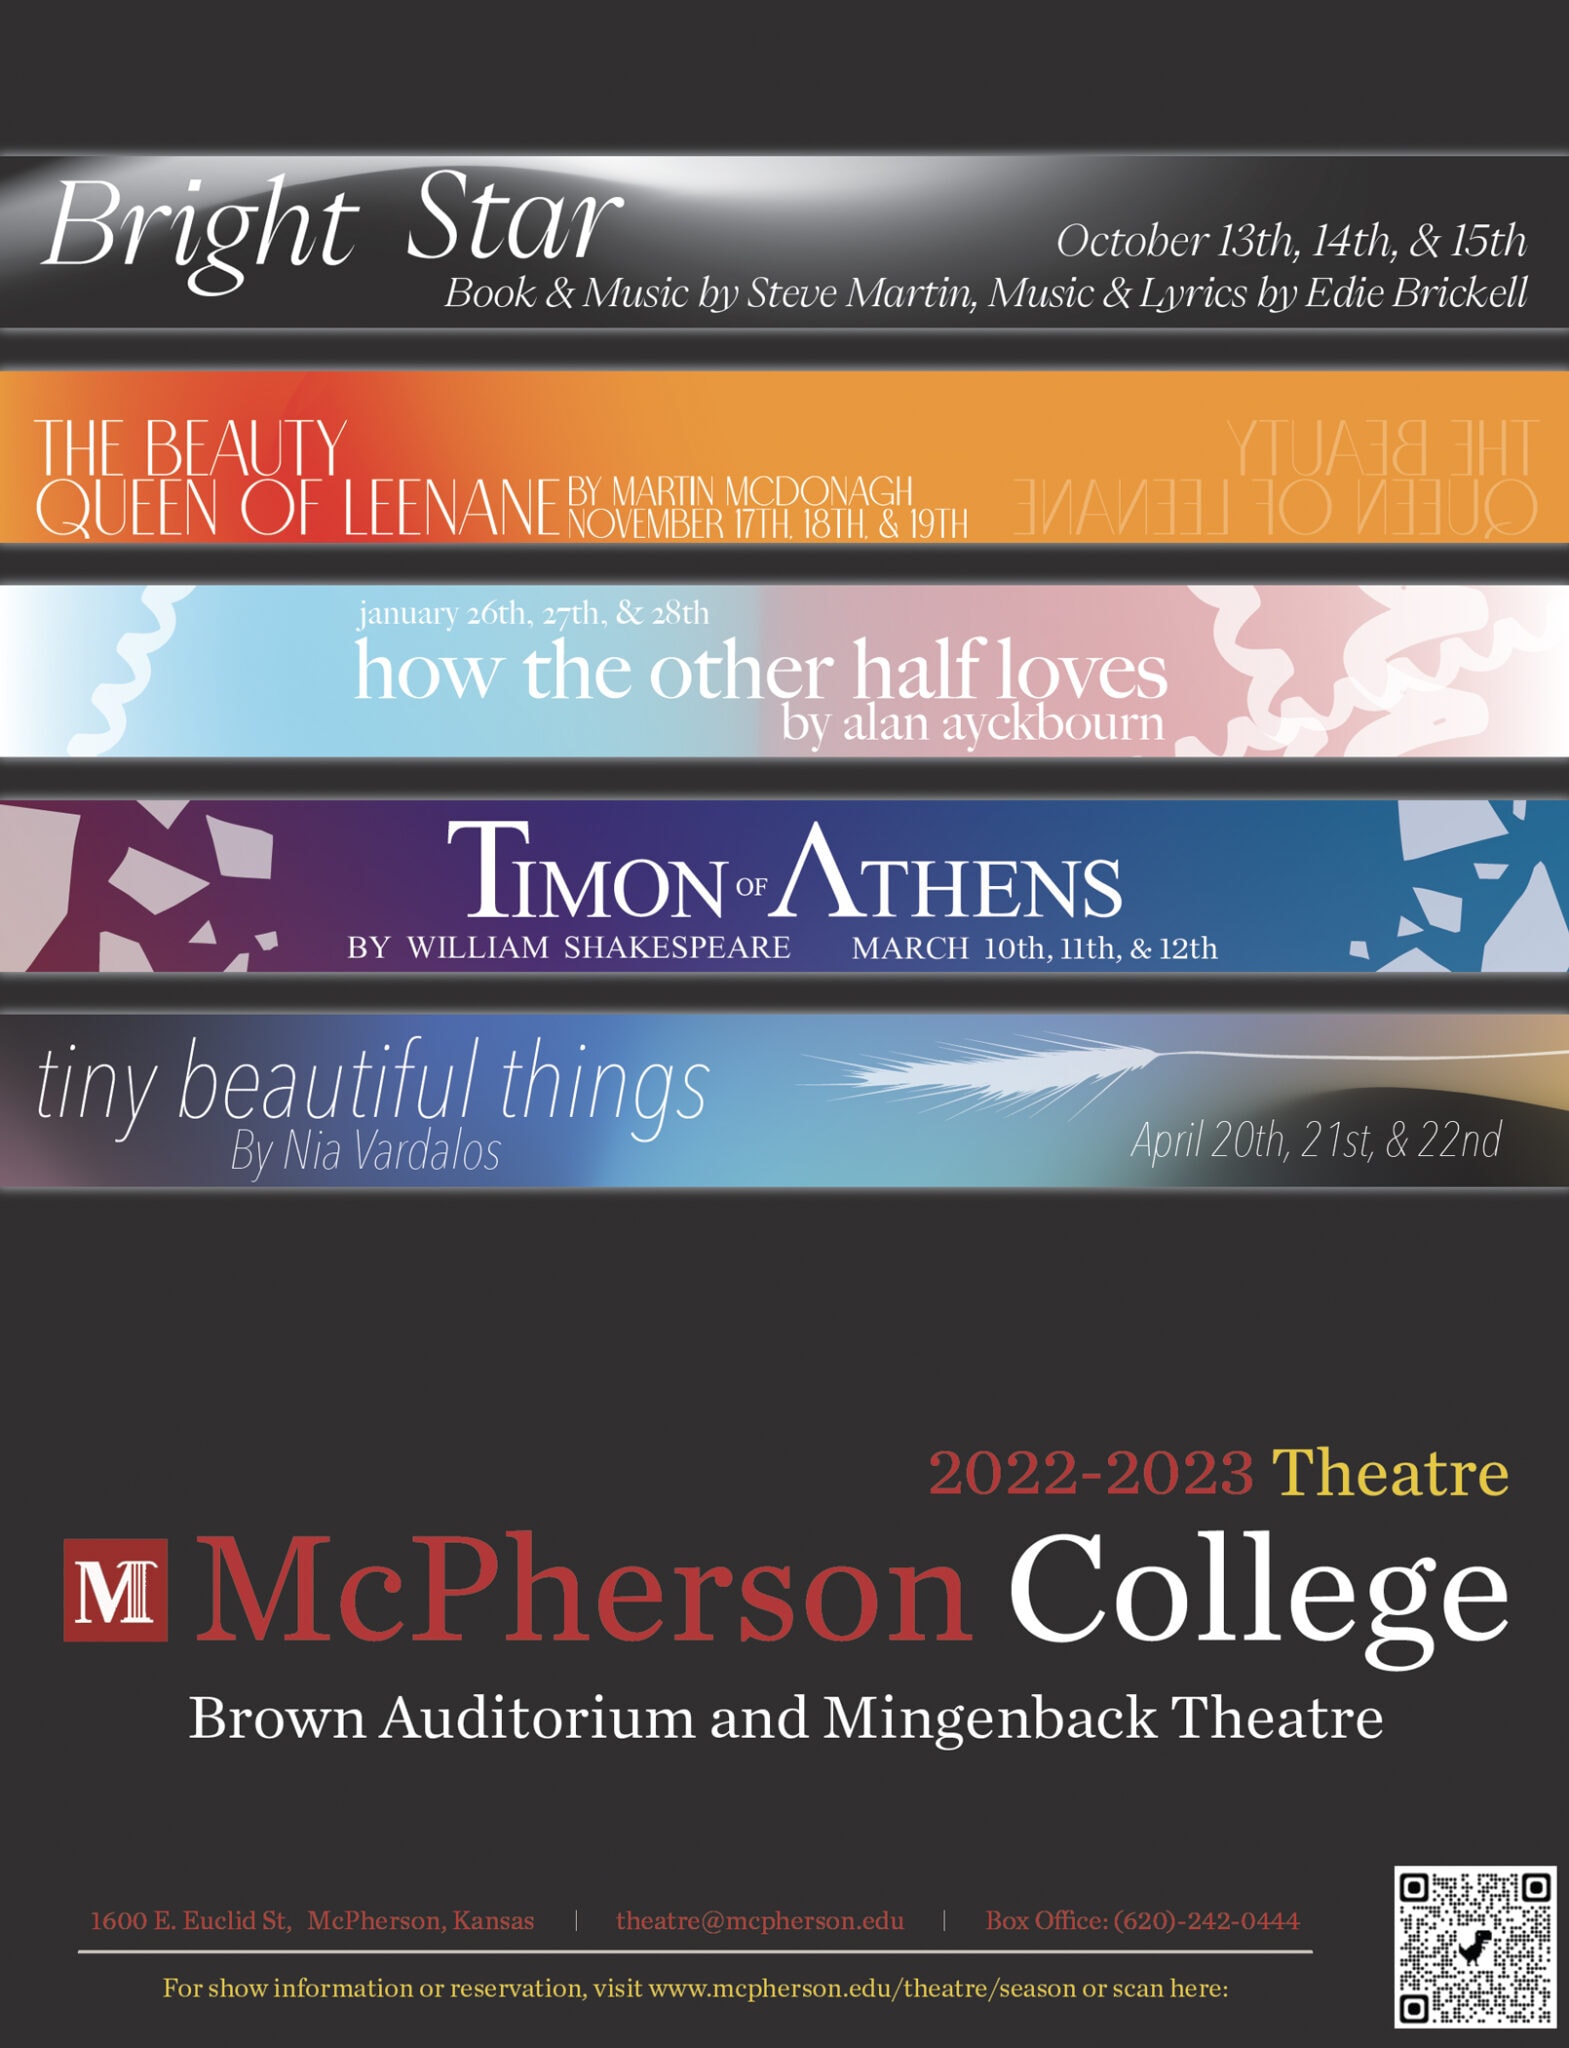 mcpherson-college-theatre-presents-bright-star-mcpherson-college